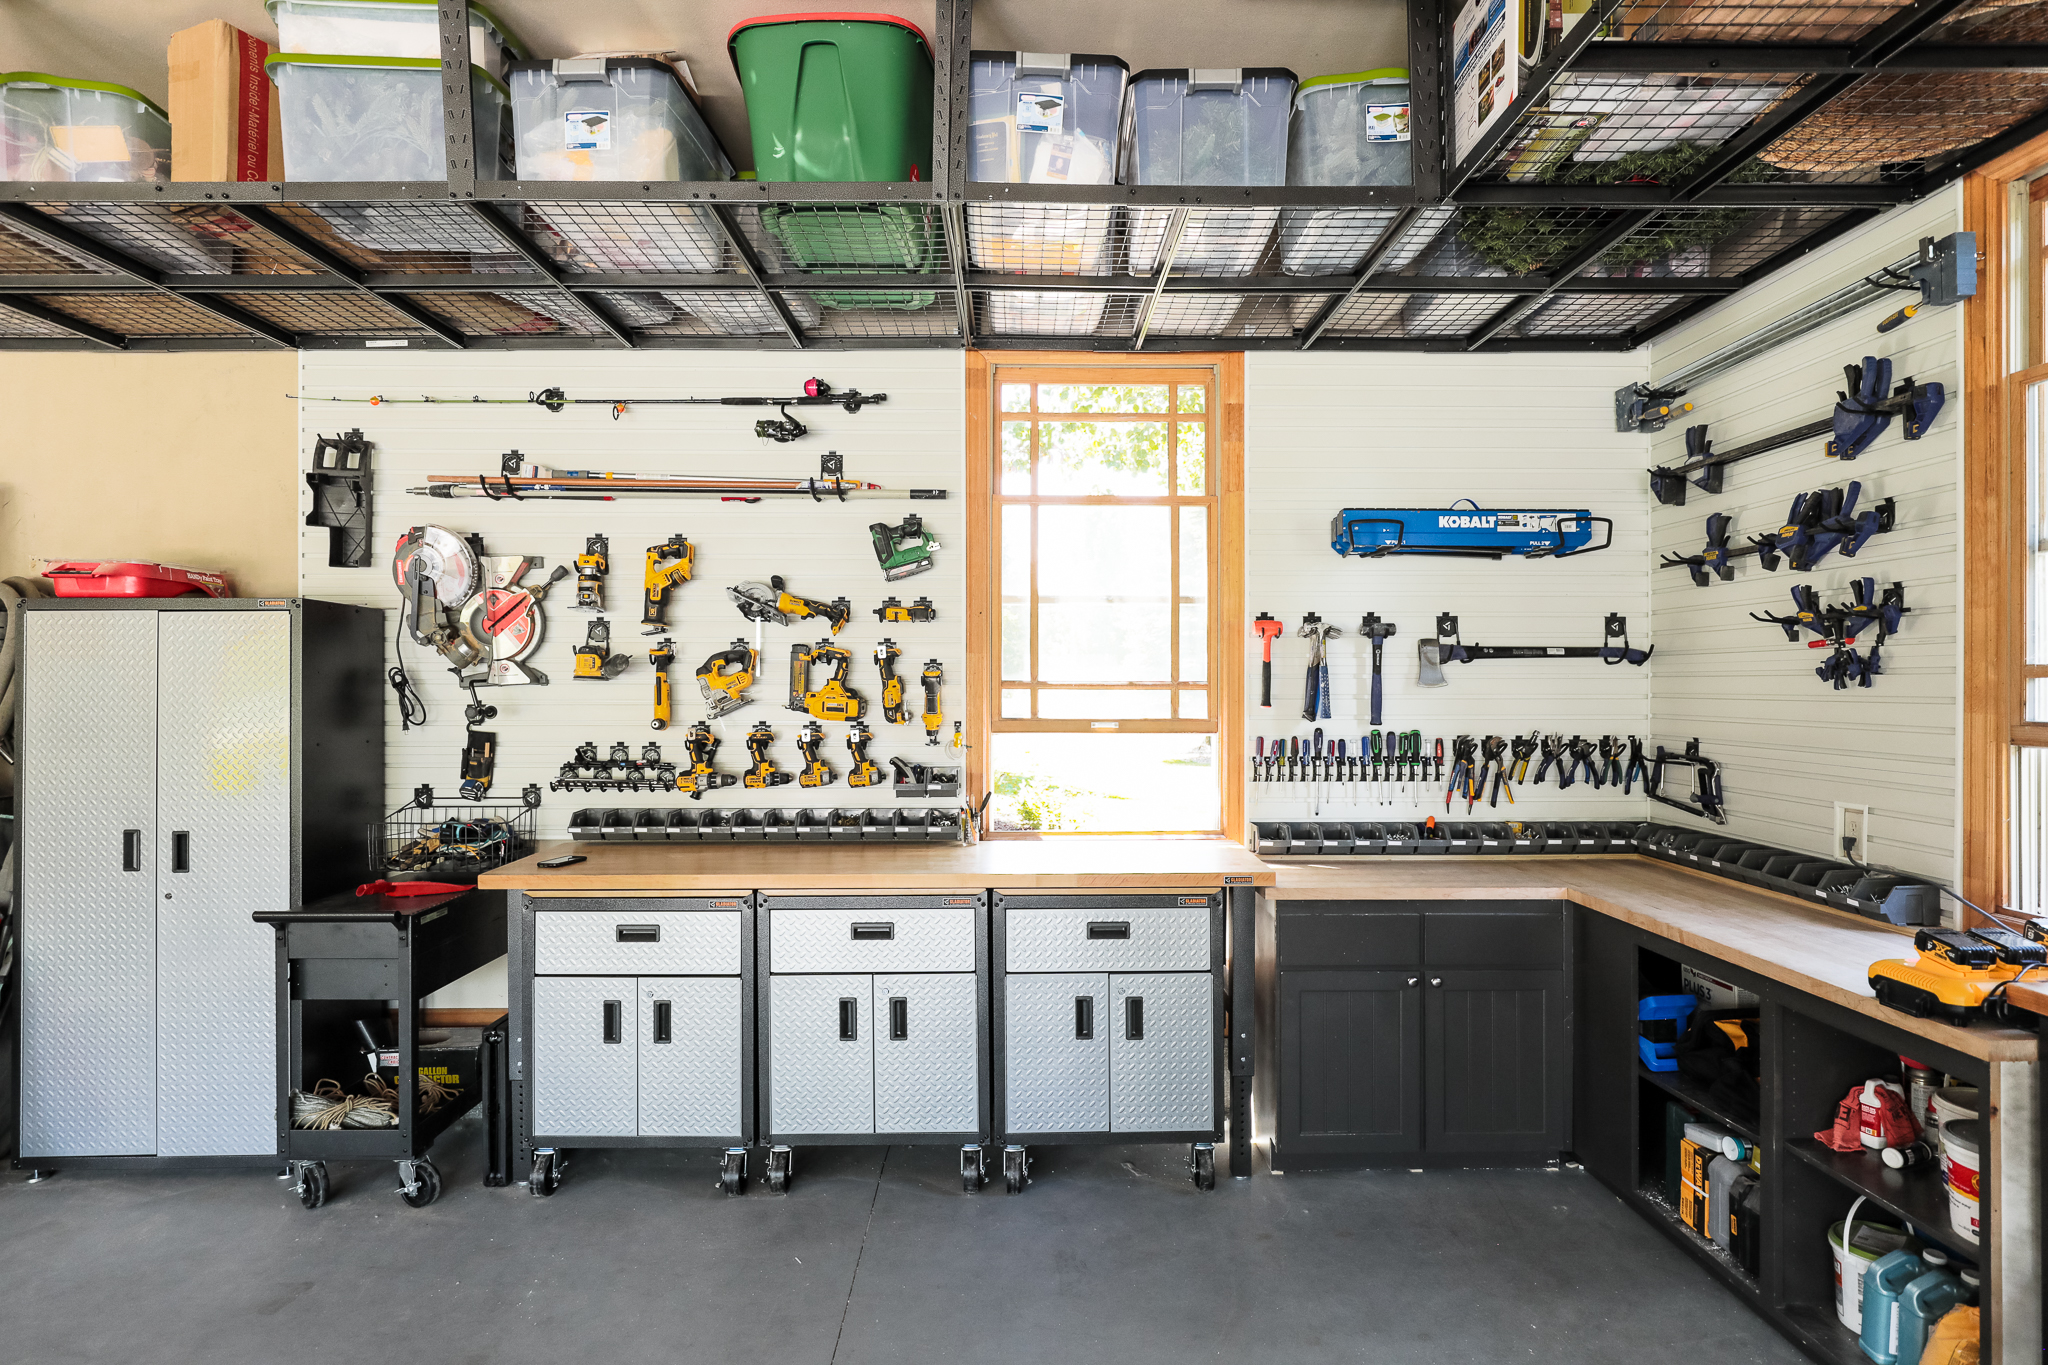 Storage And Organization In The Garage, Gladiator Garage Organization Ideas